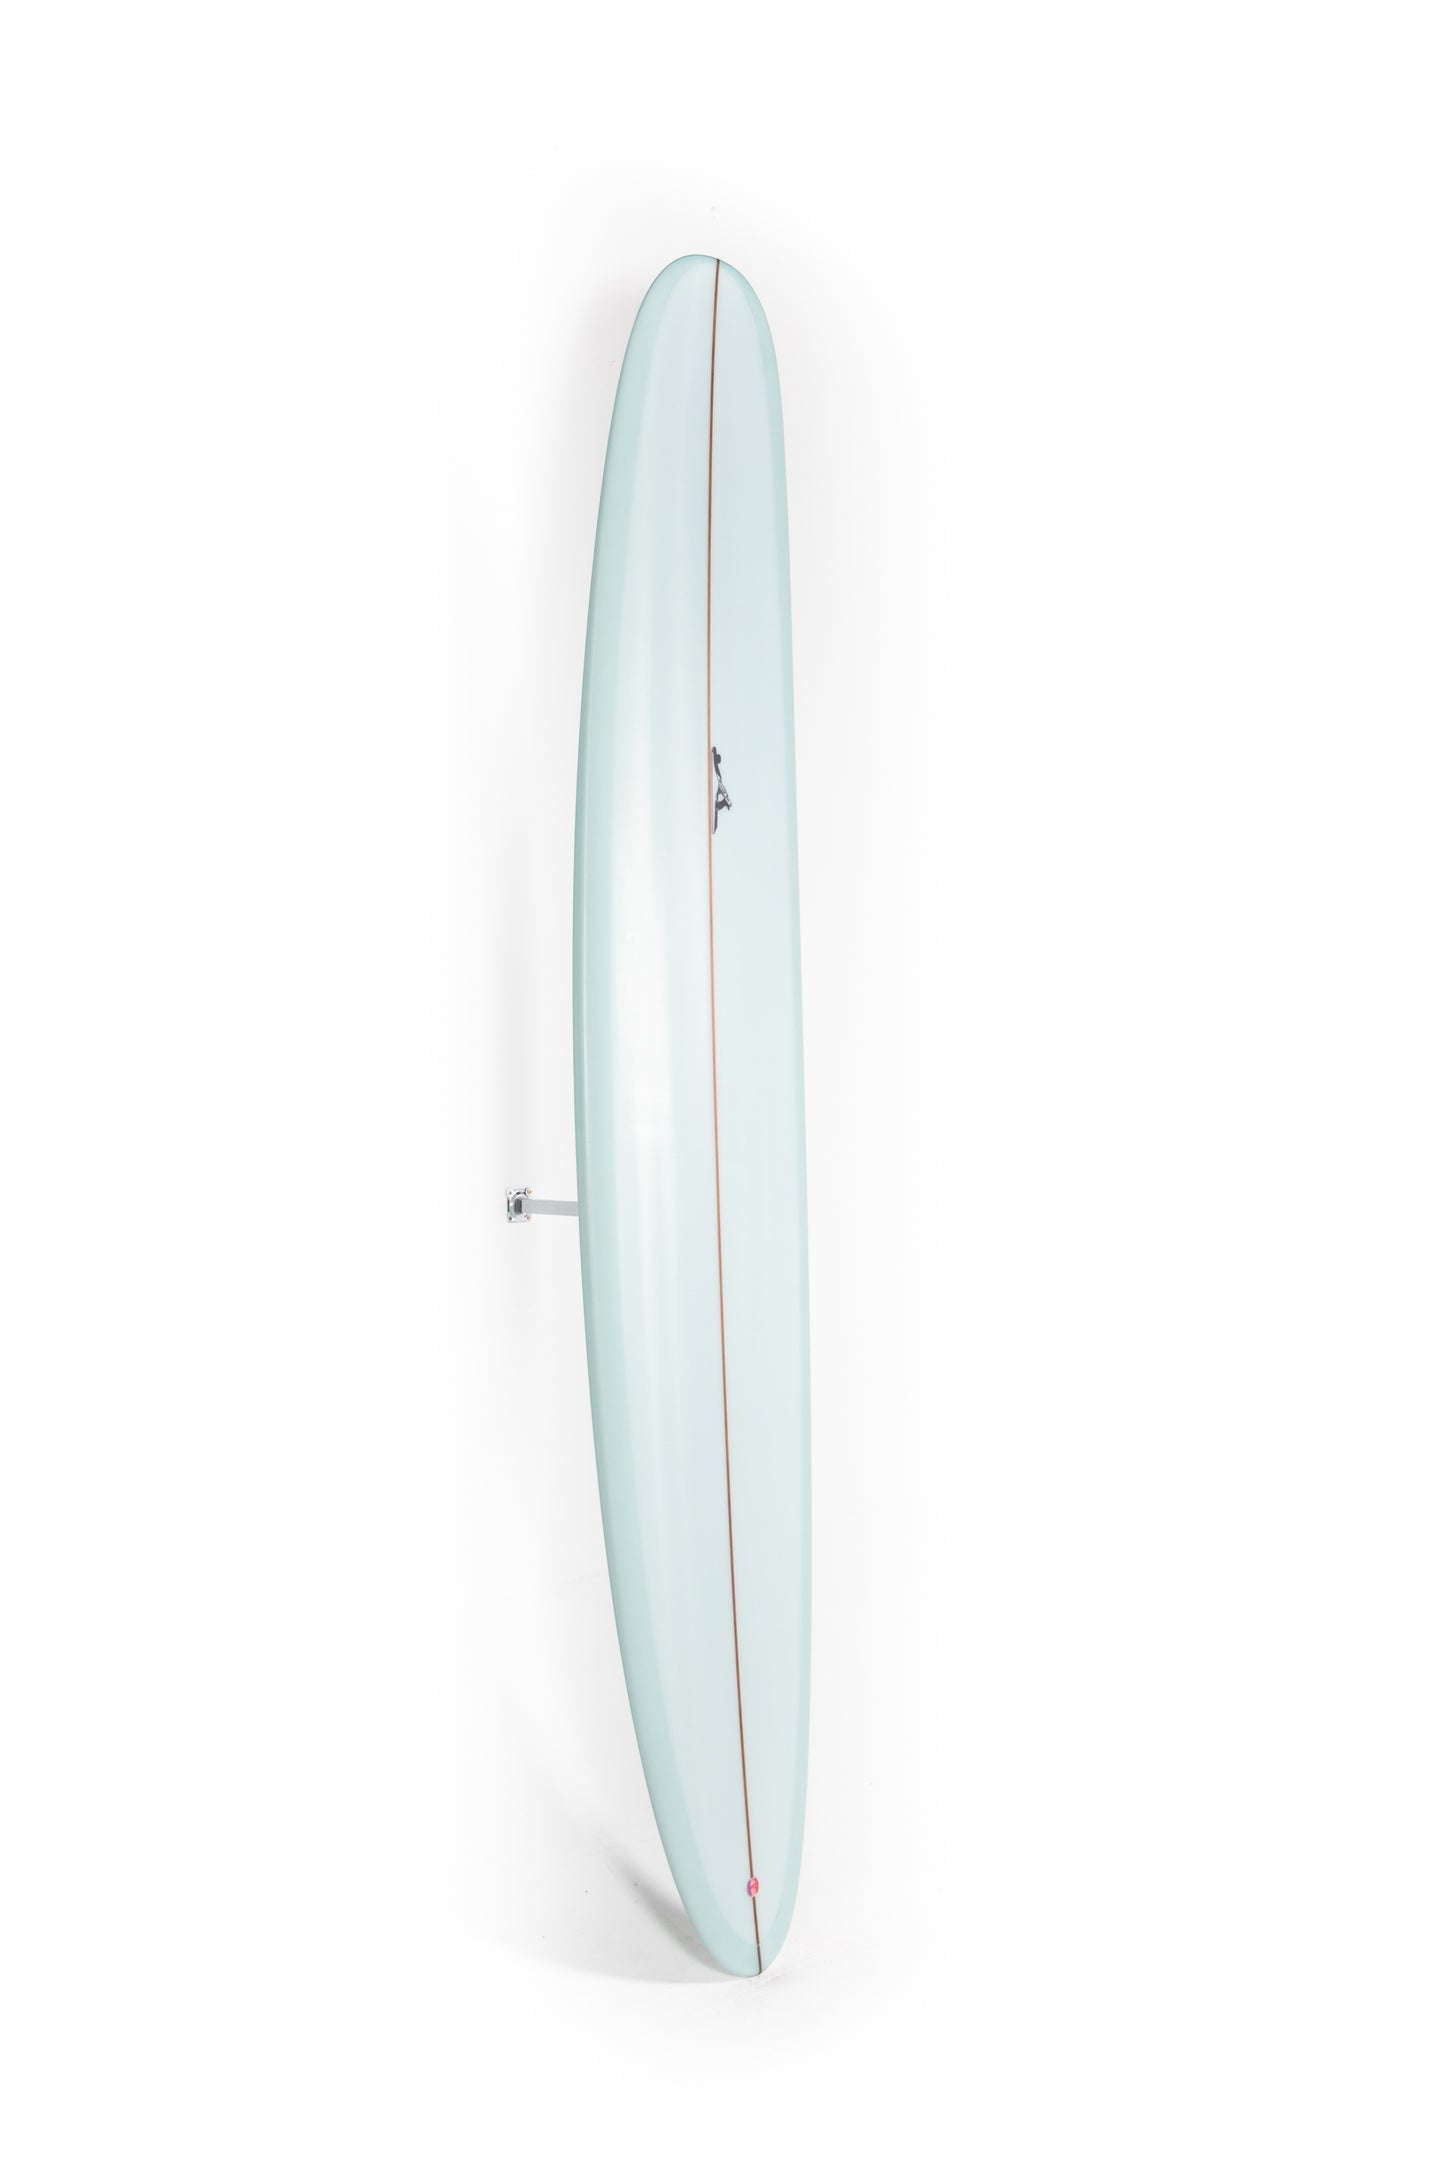 
                  
                    Pukas-Surf-Shop-Thomas-Bexon-Surfboards-Wizl-Thomas-Bexon-9_4_-WIZL94LAVENDER
                  
                